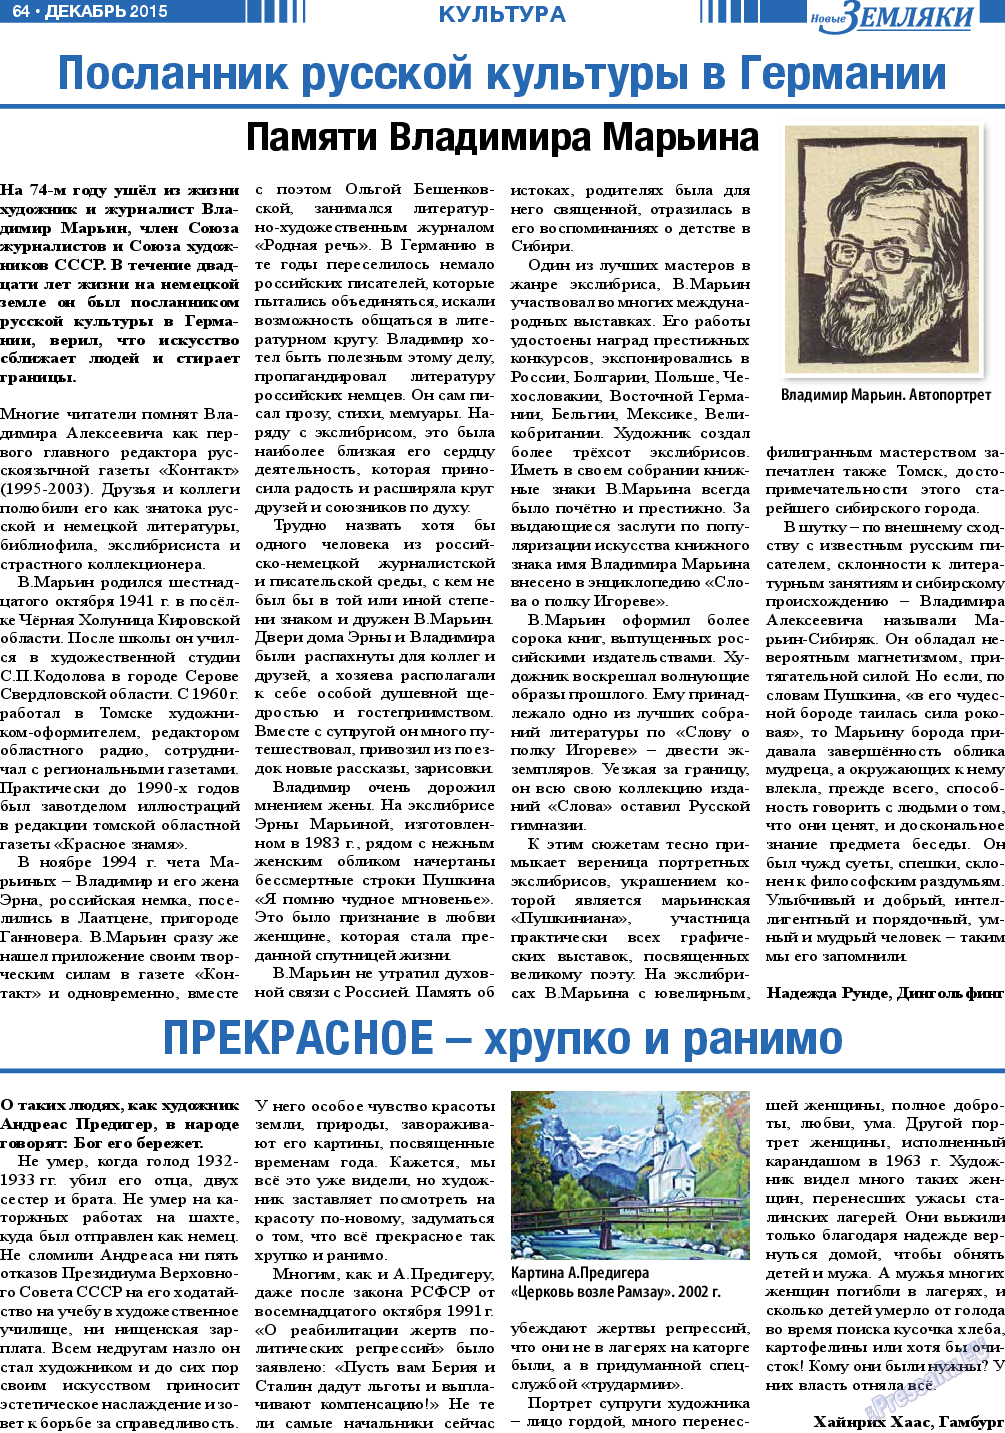 Новые Земляки, газета. 2015 №12 стр.64